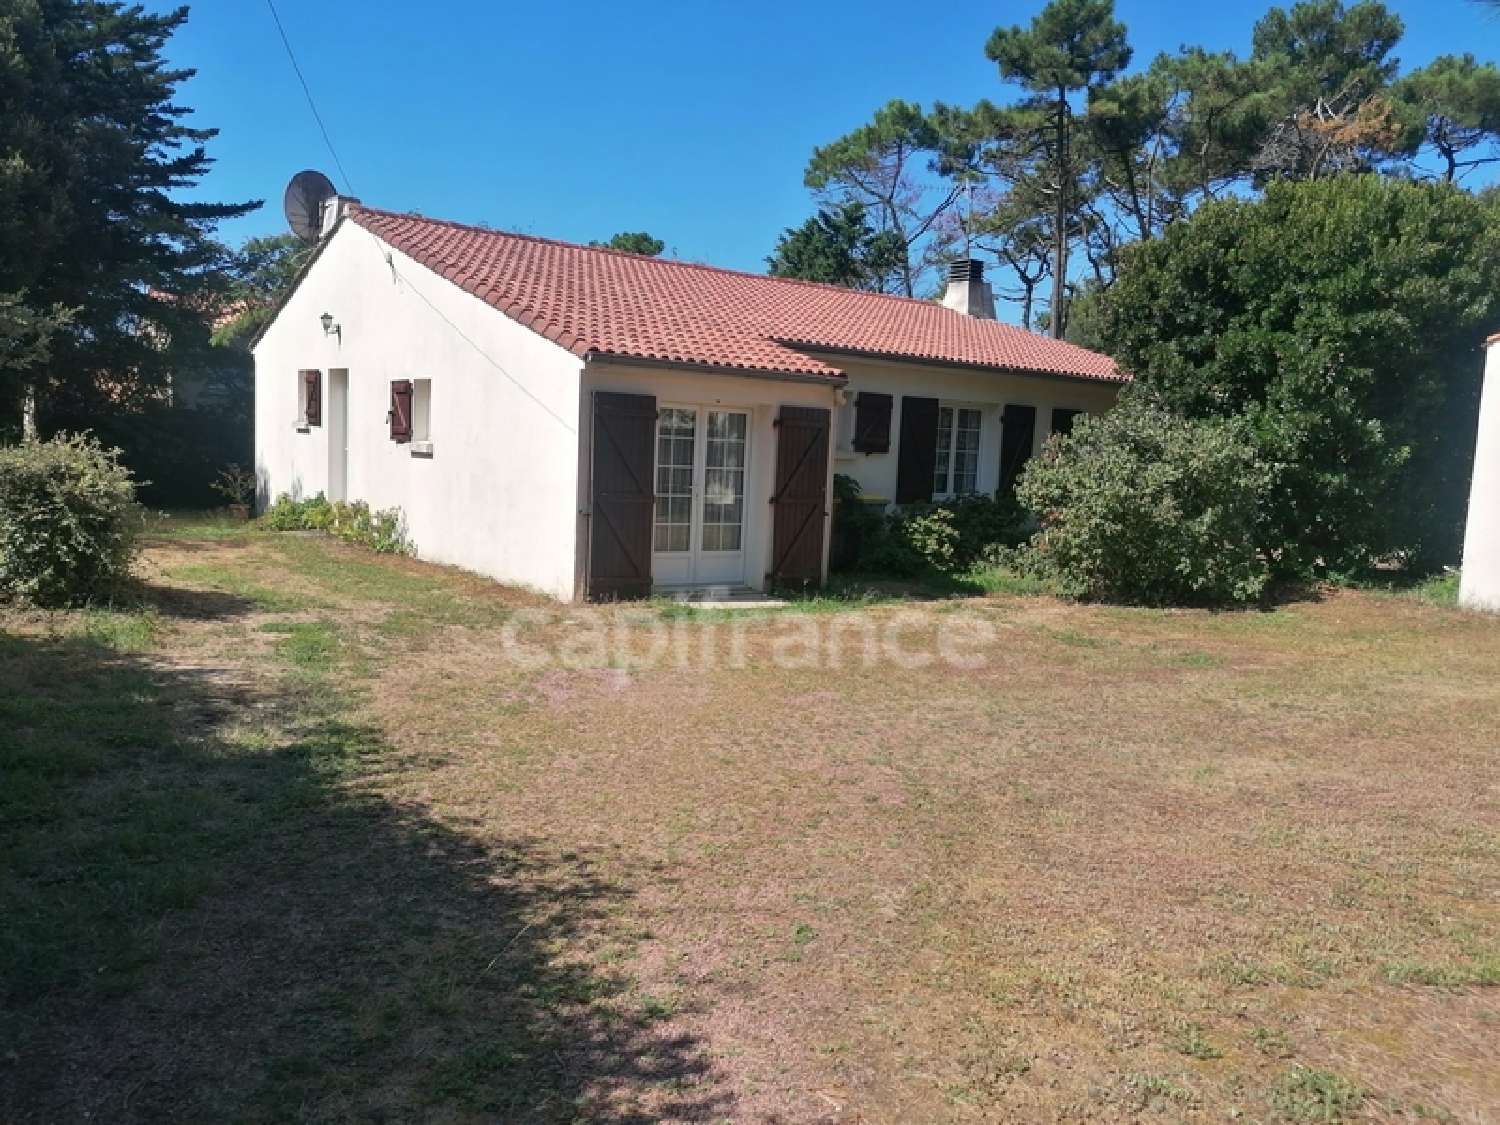  for sale house Jard-sur-Mer Vendée 1